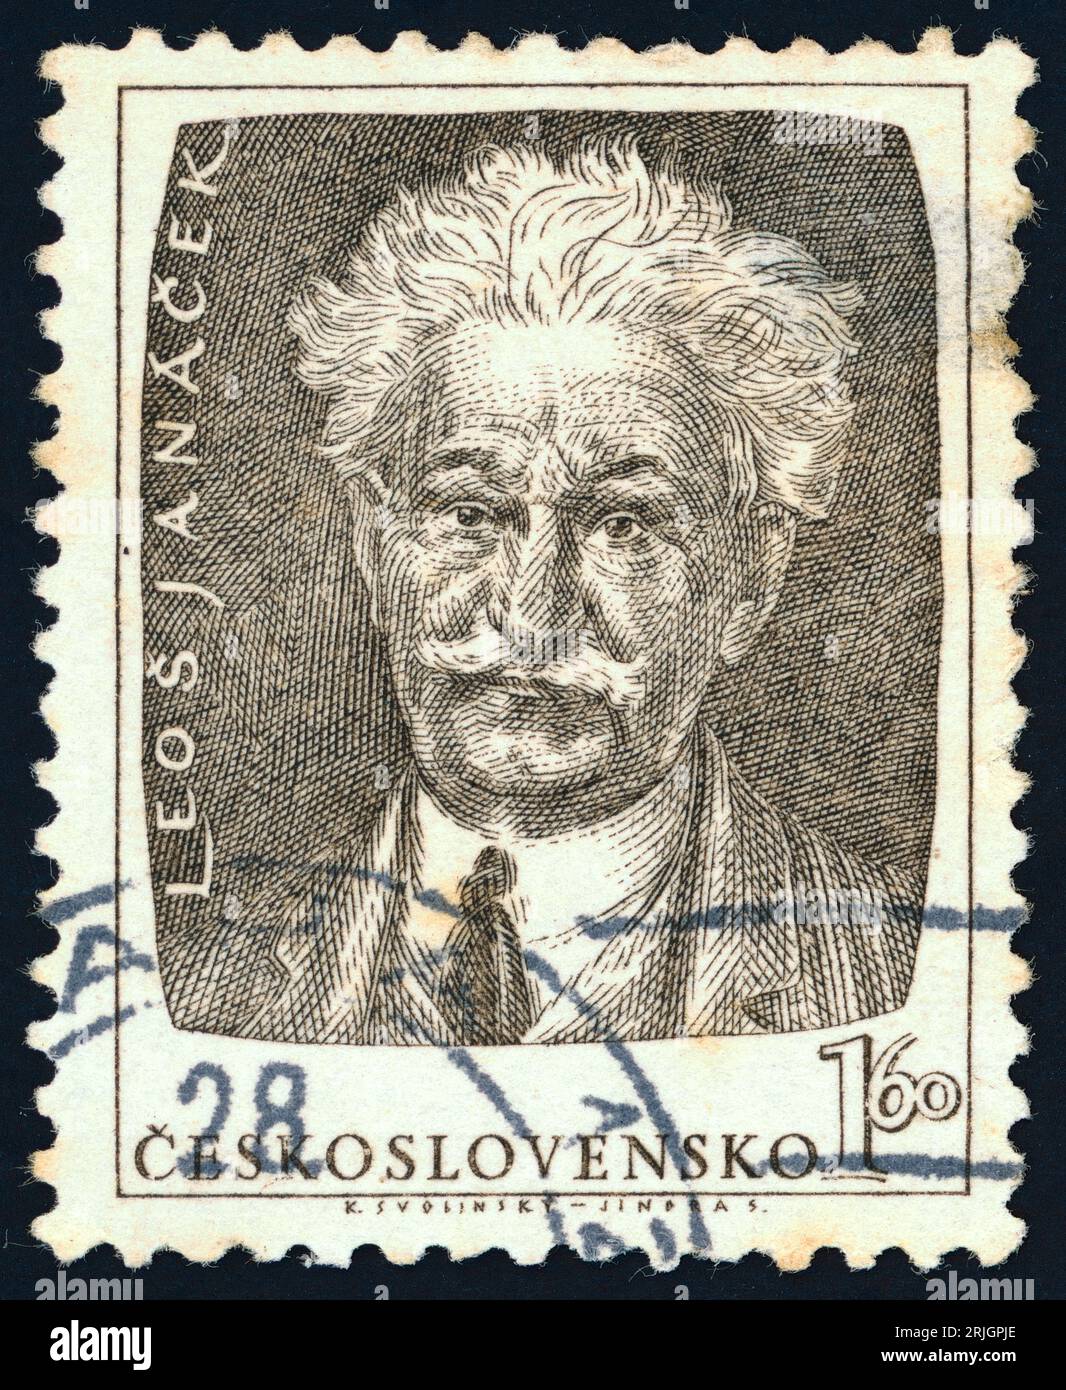 Leoš Janáček (1854 – 1928). Postage stamp issued in Czechoslovakia in 1953. Stock Photo